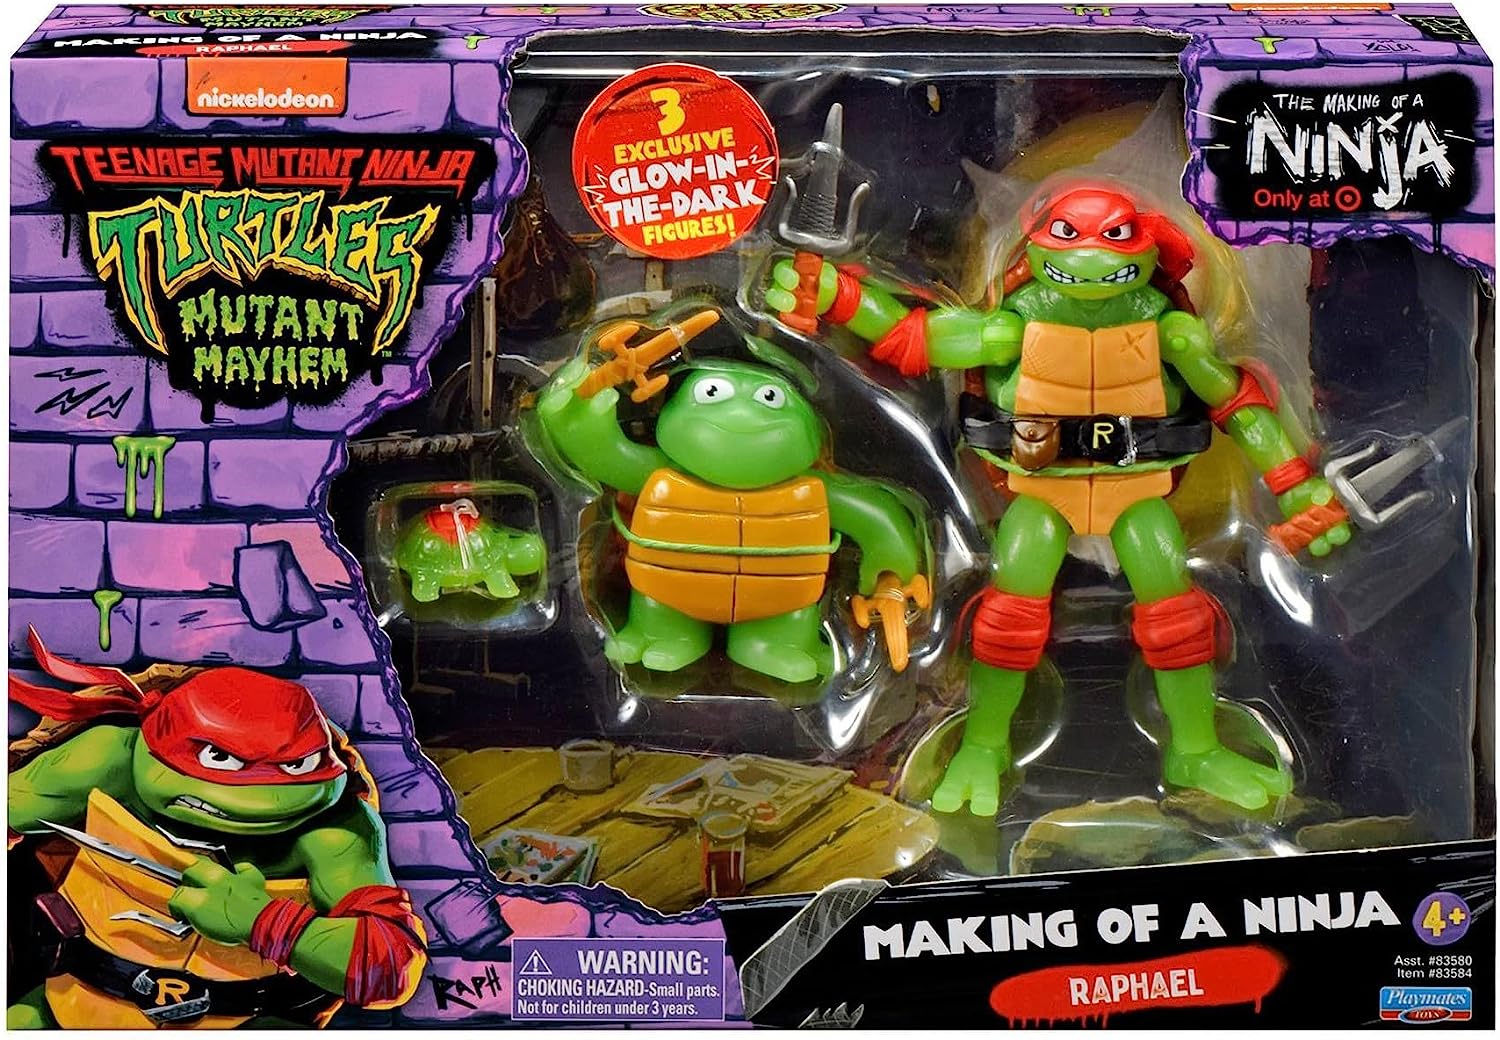 Playmates Teenage Mutant Ninja Turtles: Mutant Mayhem Mini Figure